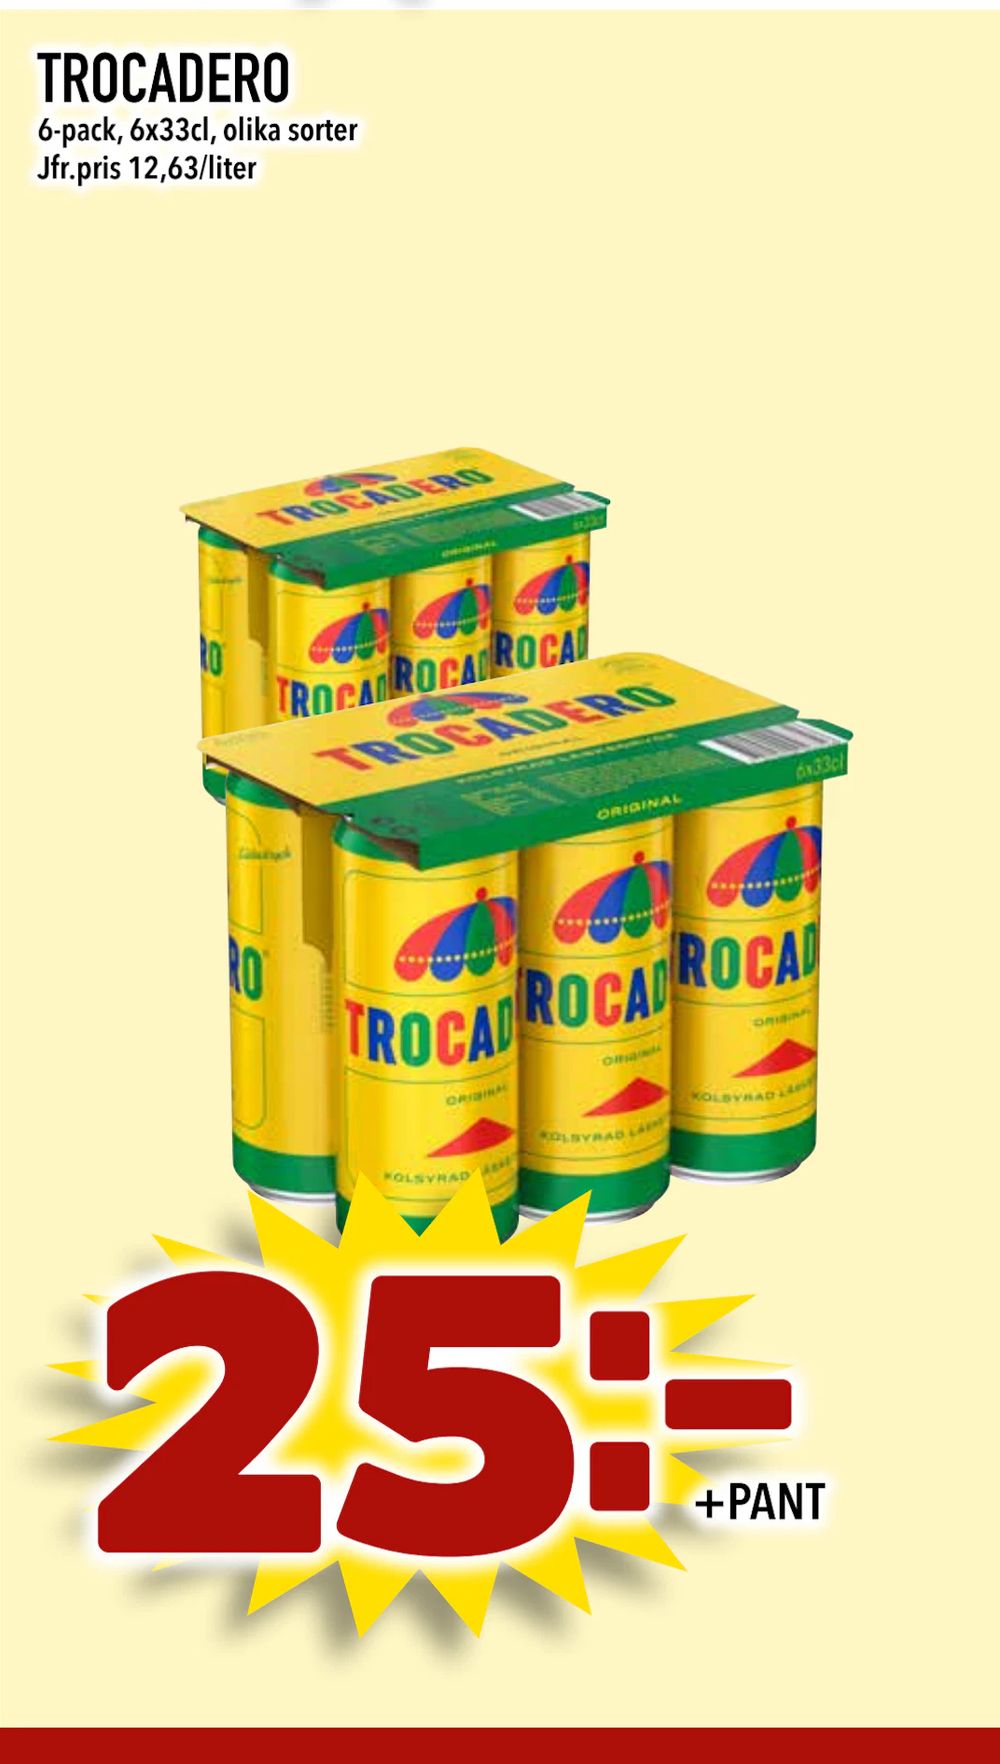 Erbjudanden på TROCADERO från Bonum matmarknad för 25 kr